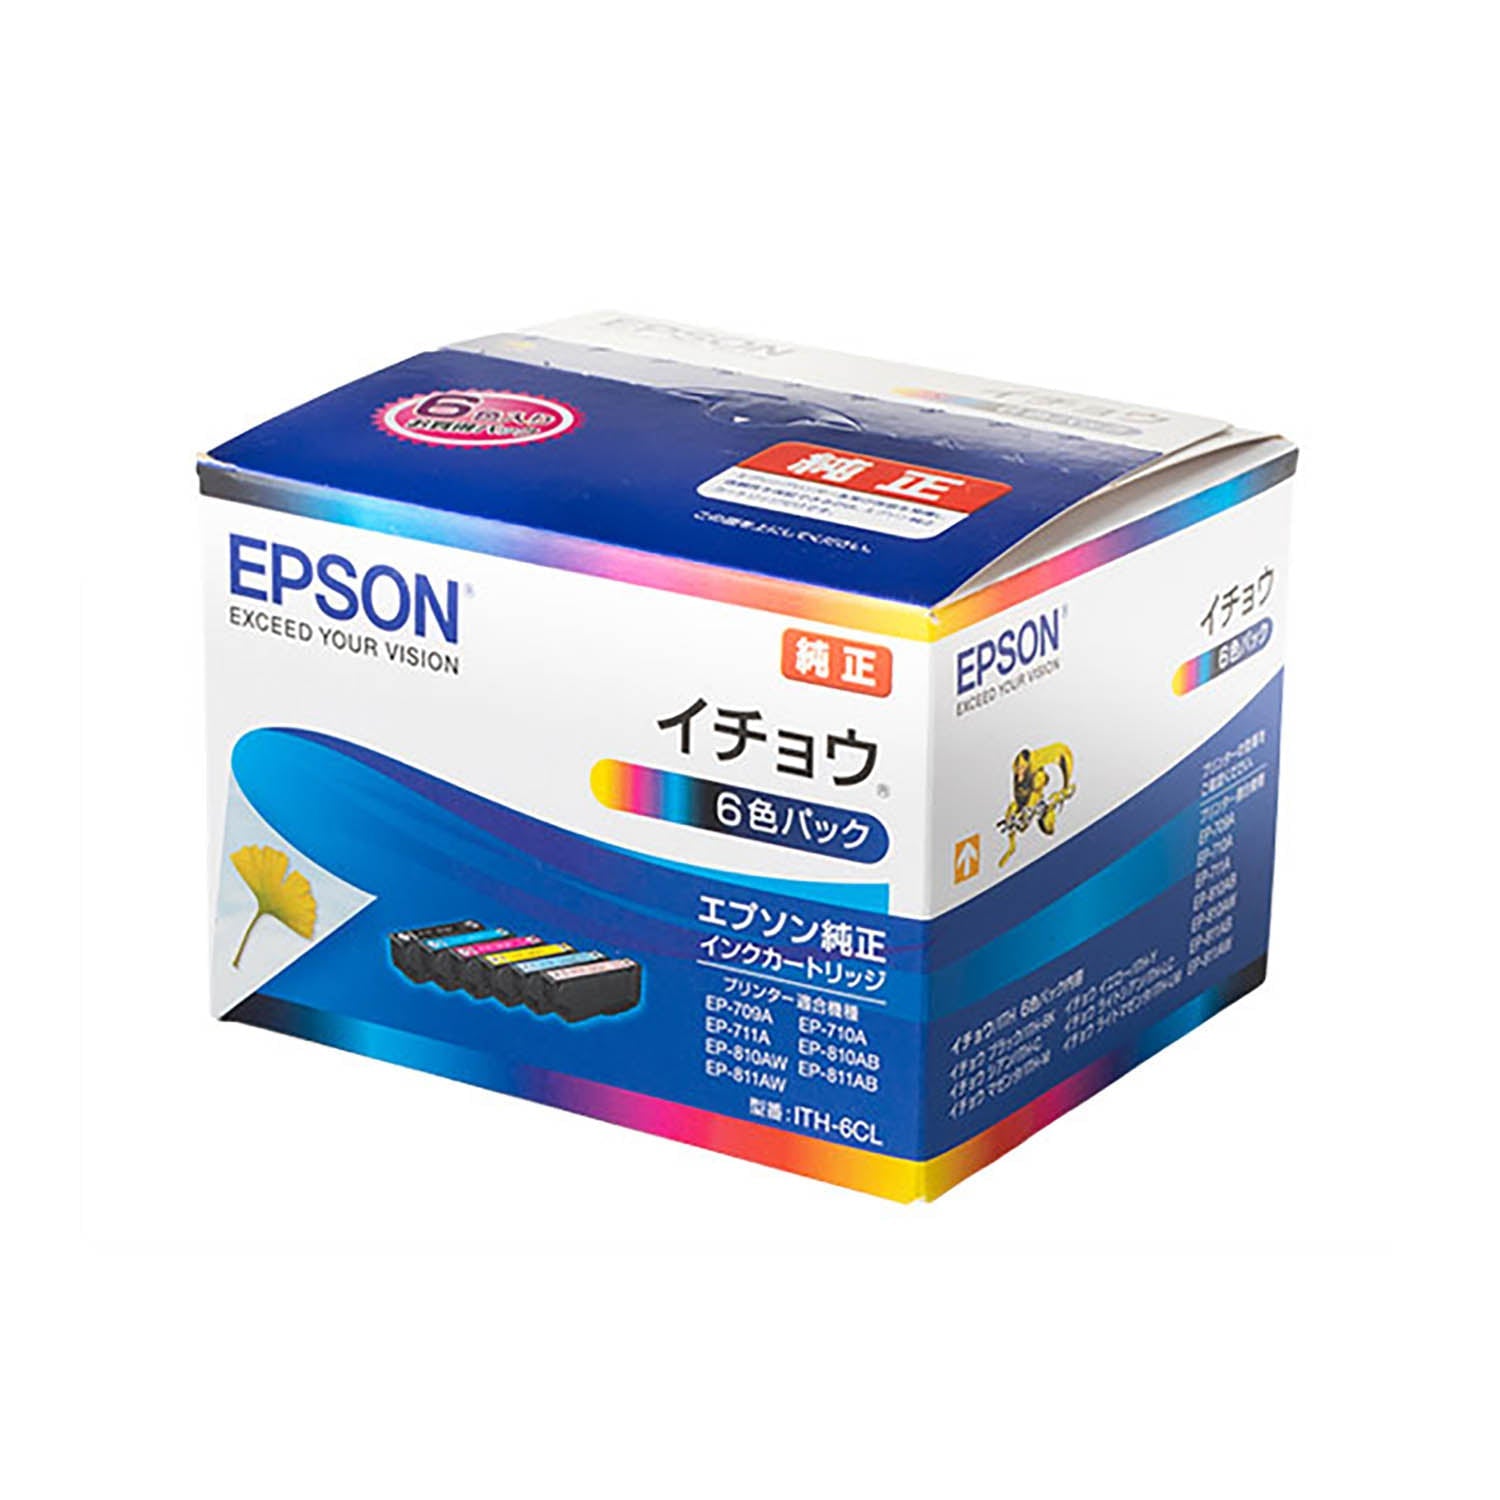 エプソン用 ITH-6CL (イチョウ) 純正インク 6色セット